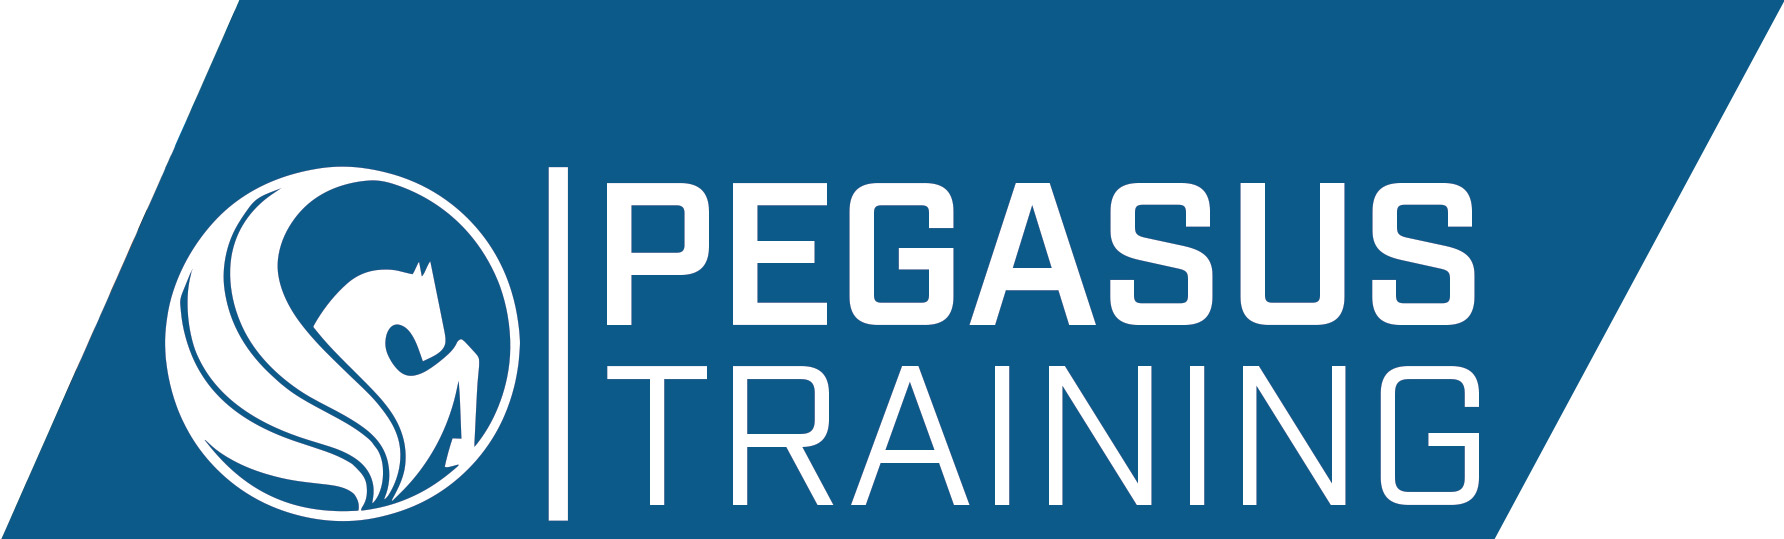 Pegasus Training